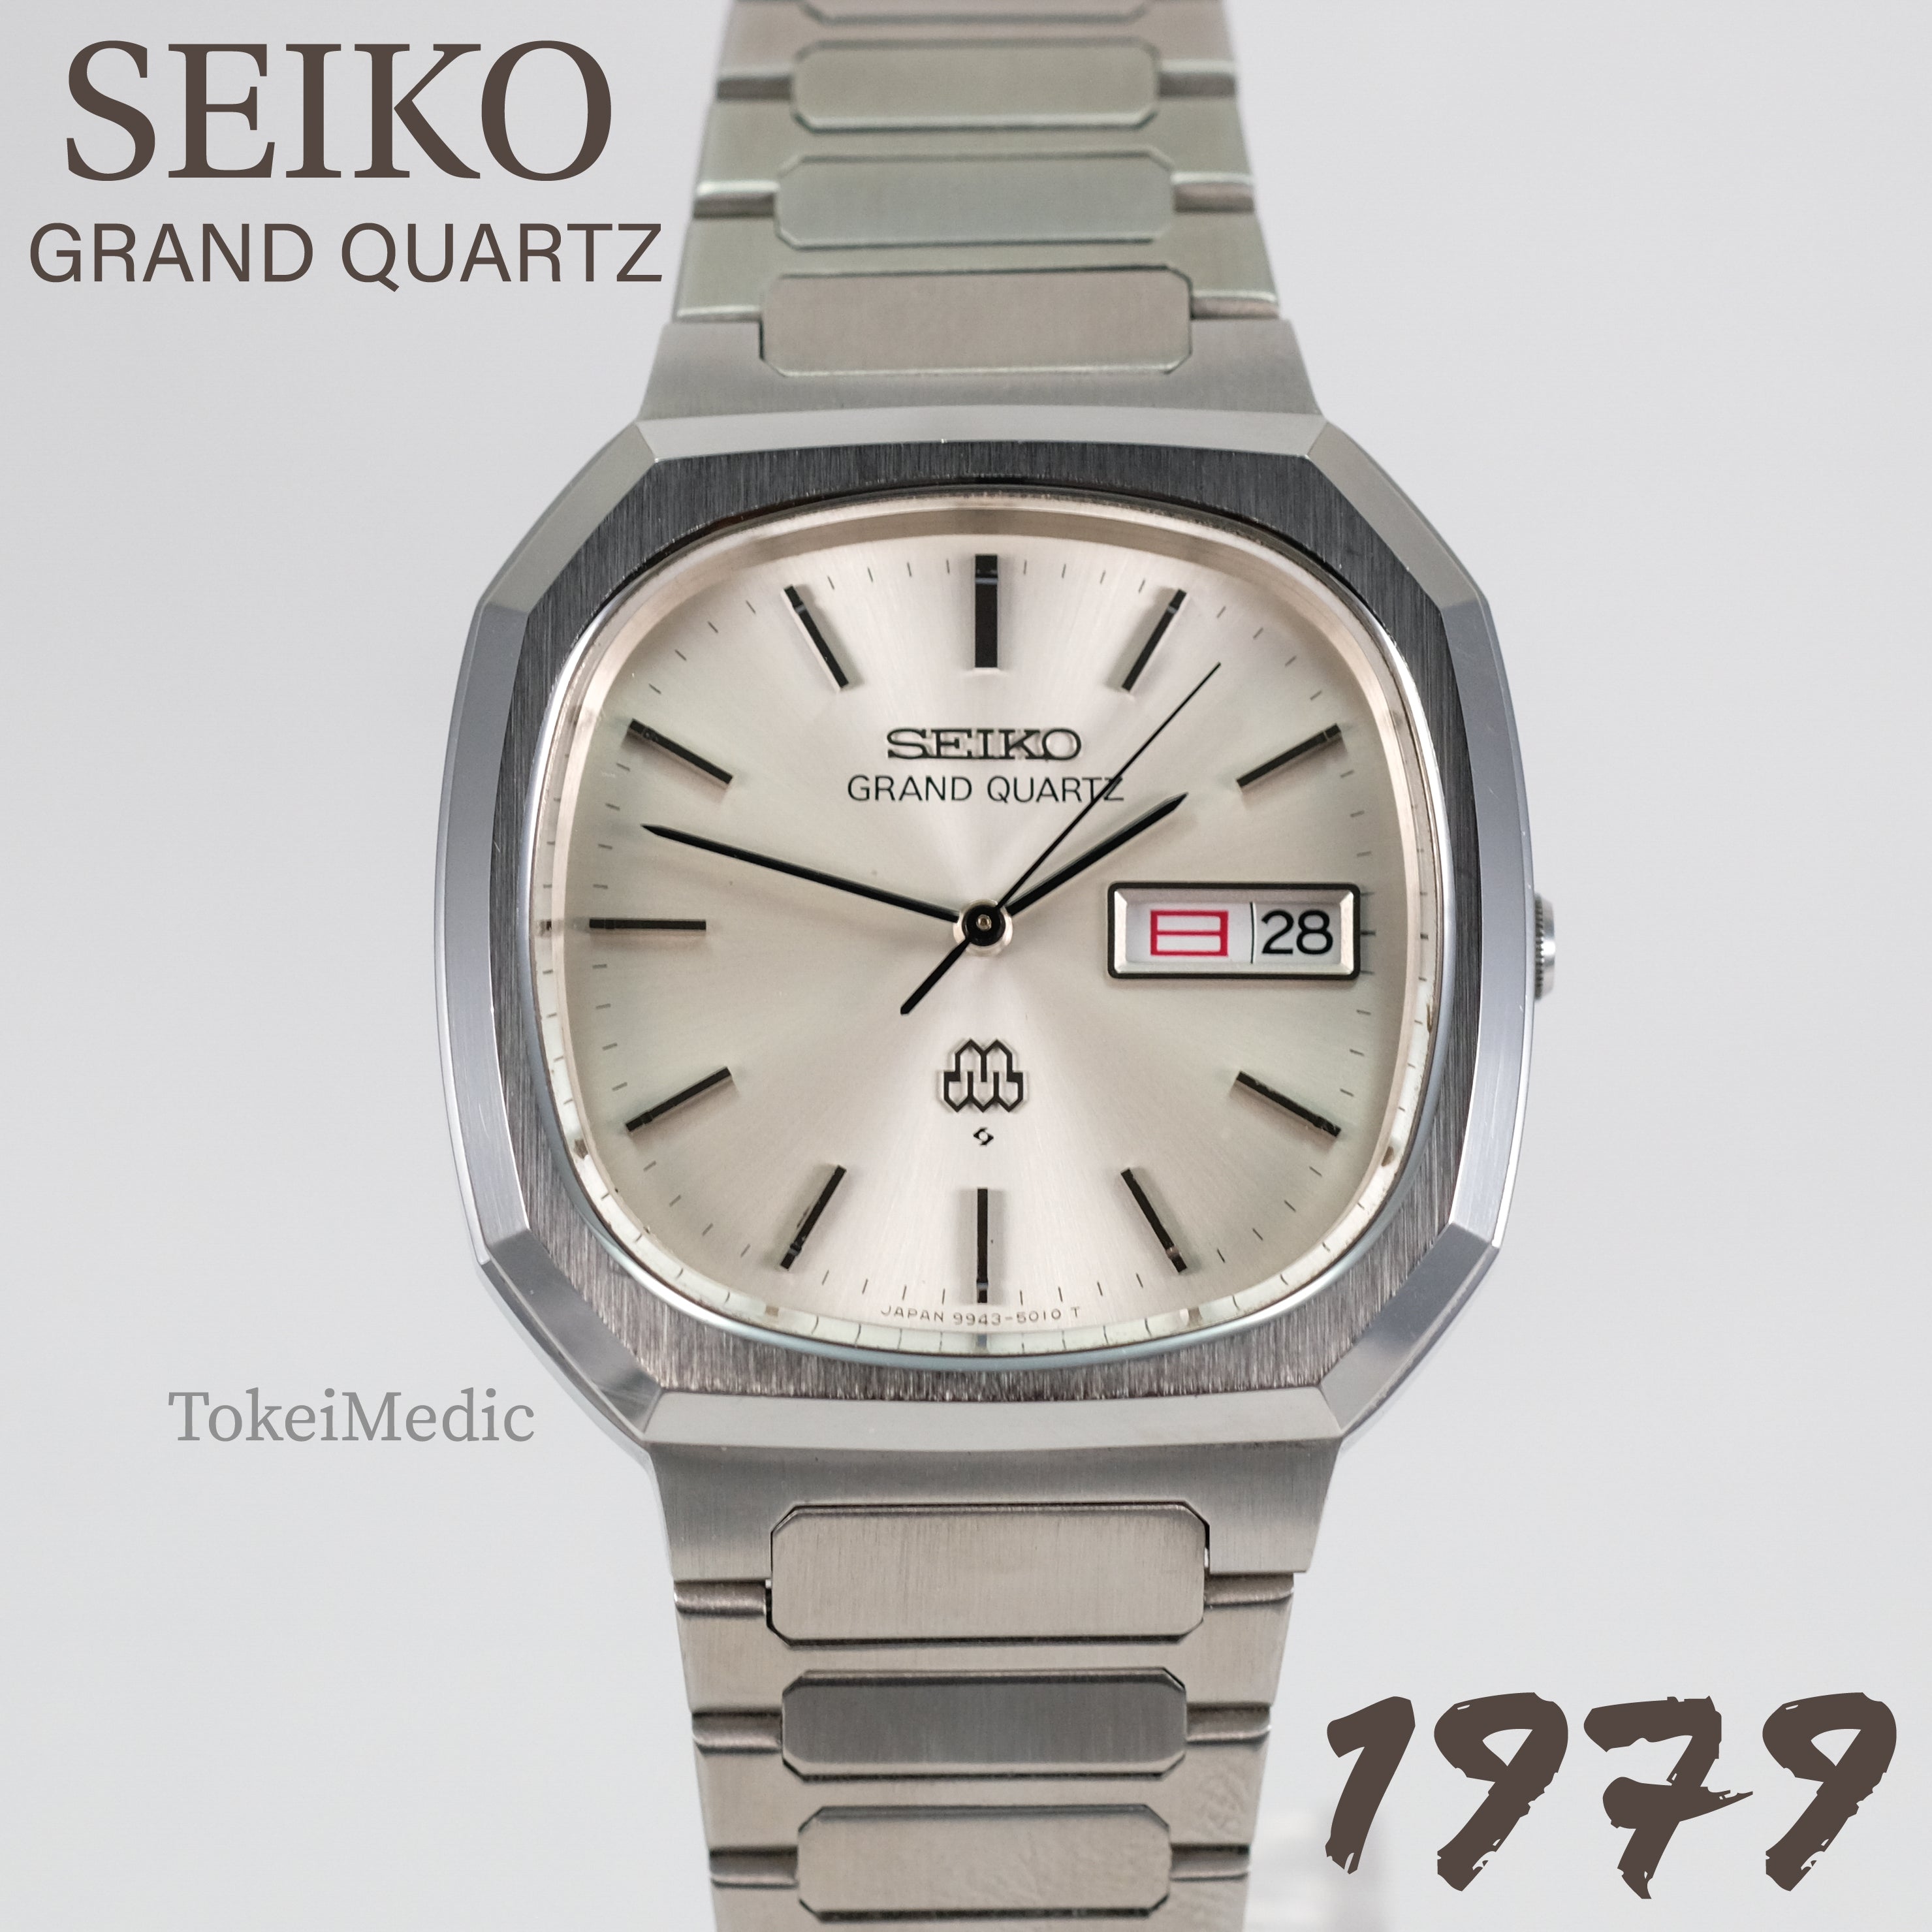 1979 Seiko Grand Quartz 9943-5020